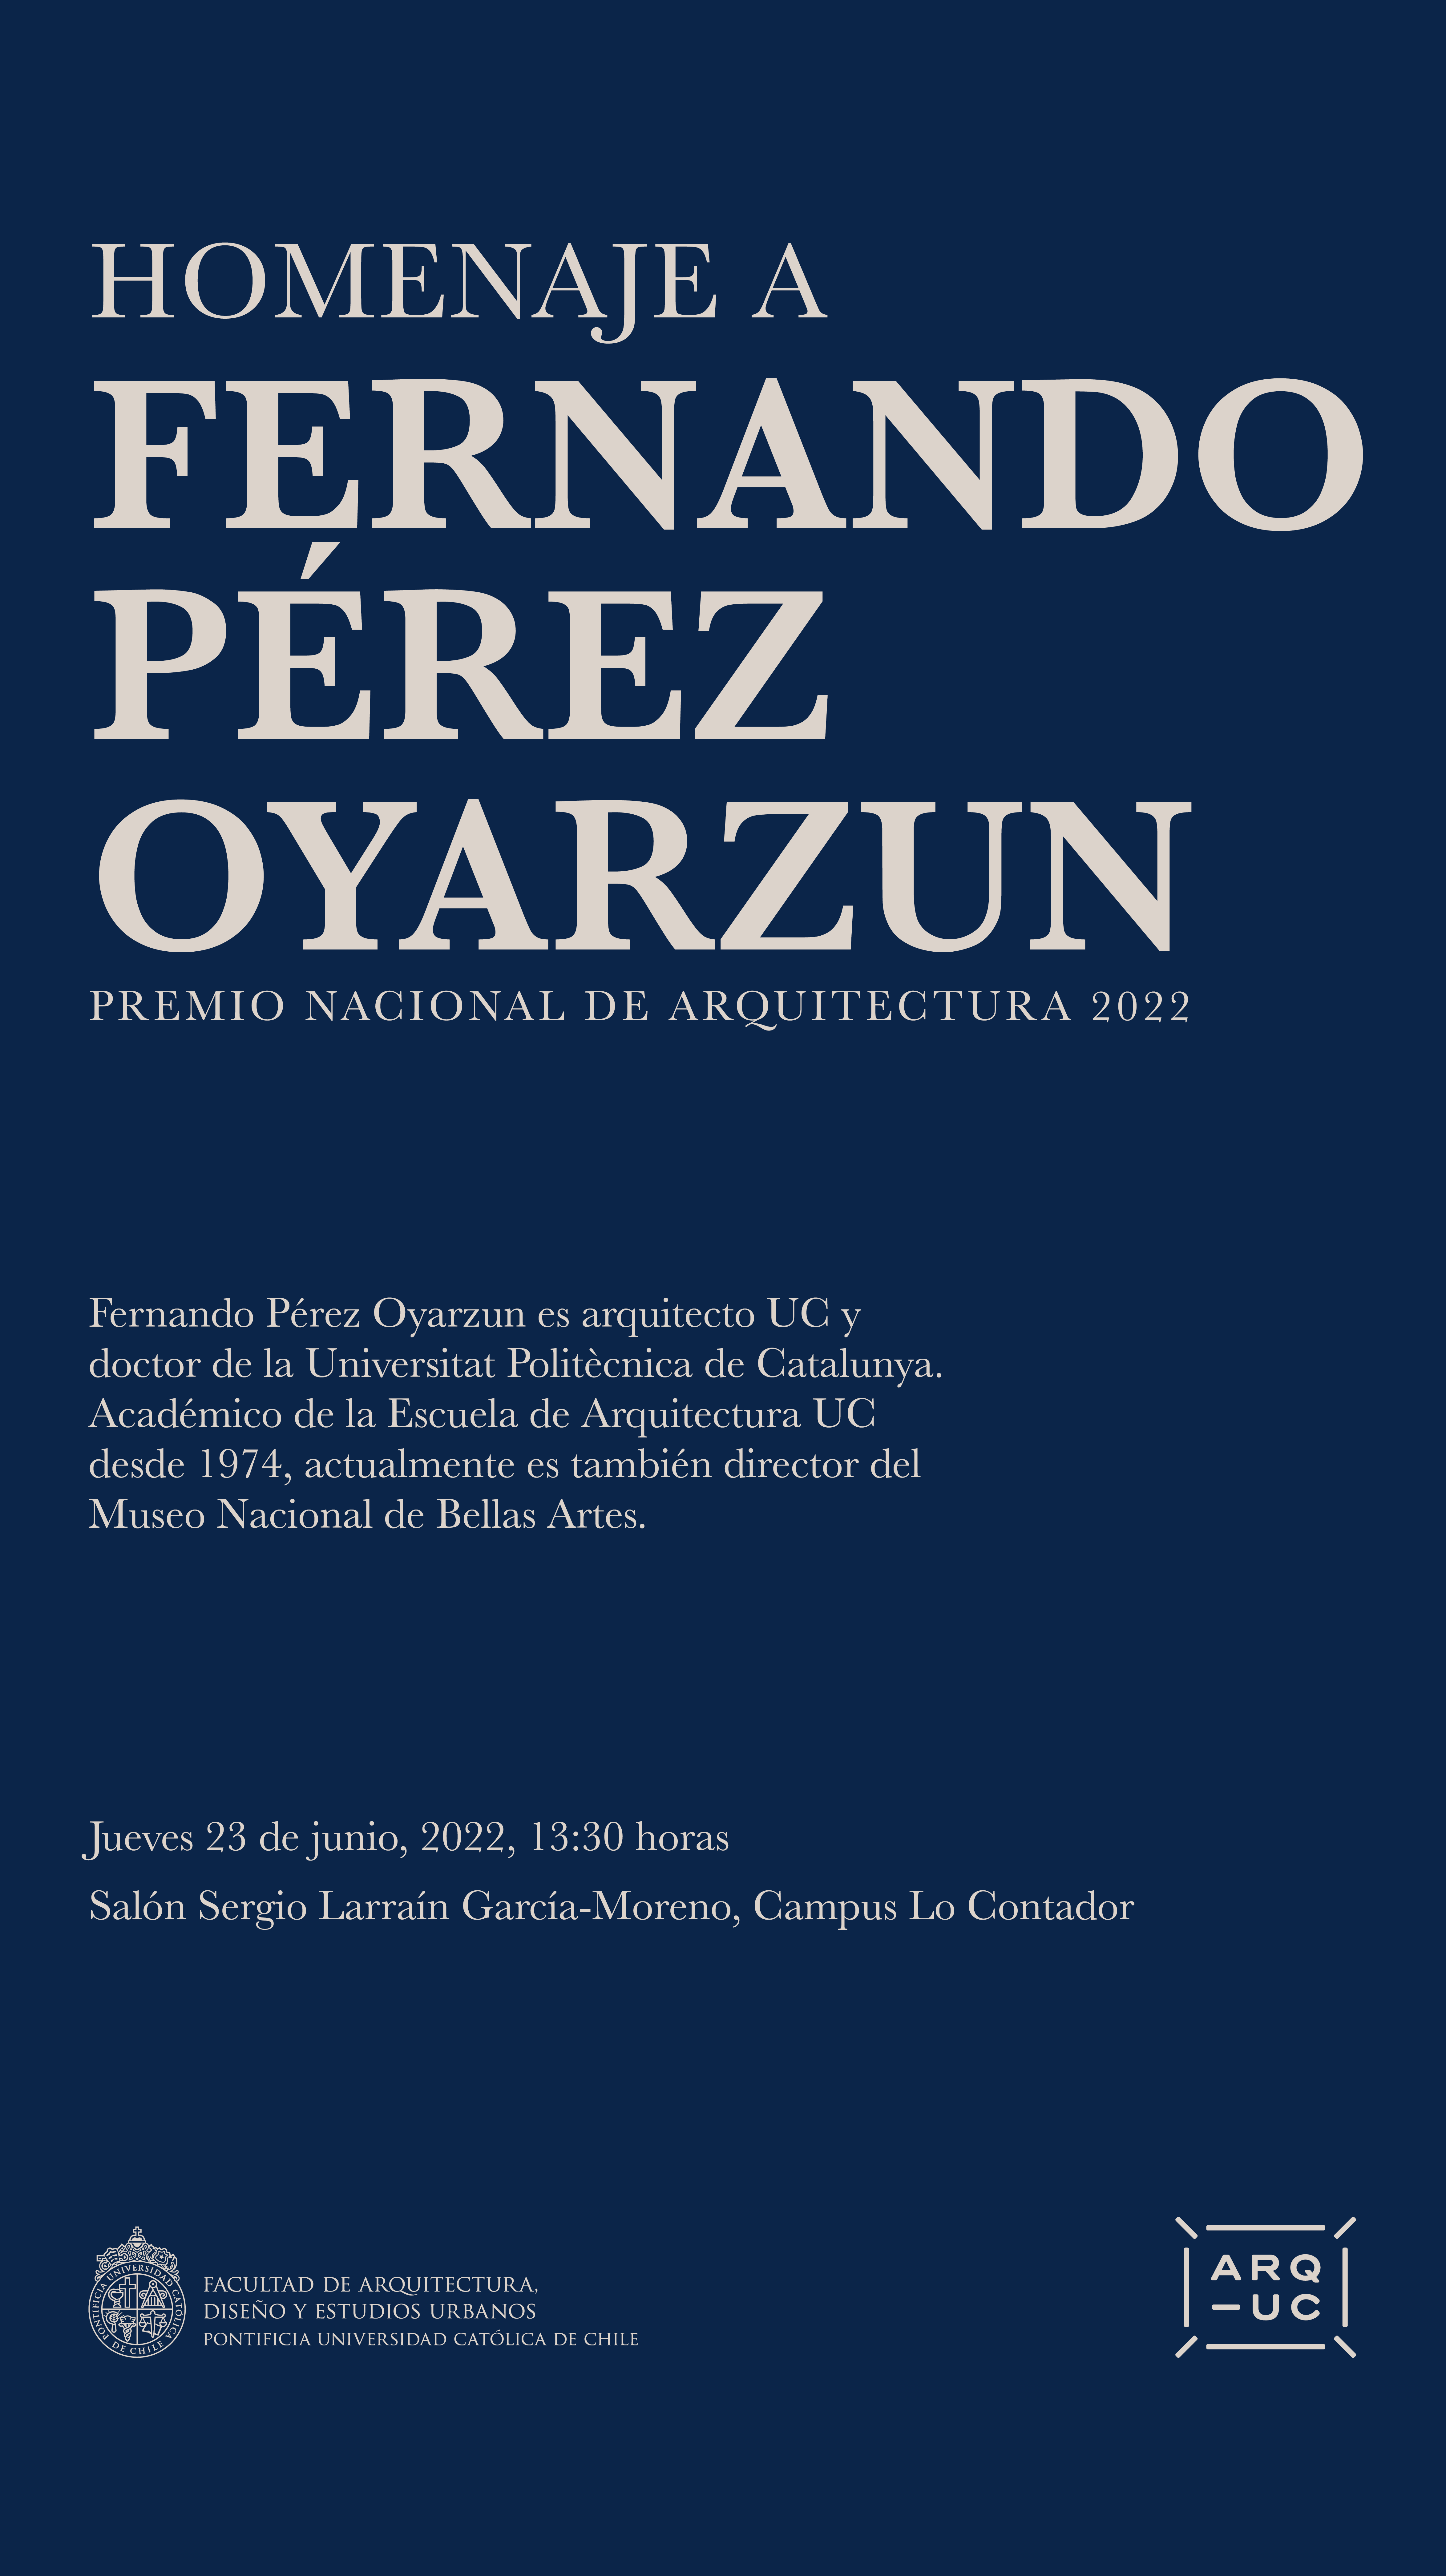 2022-06-15_AFICHE_Homenaje_Fernando_Perez.png